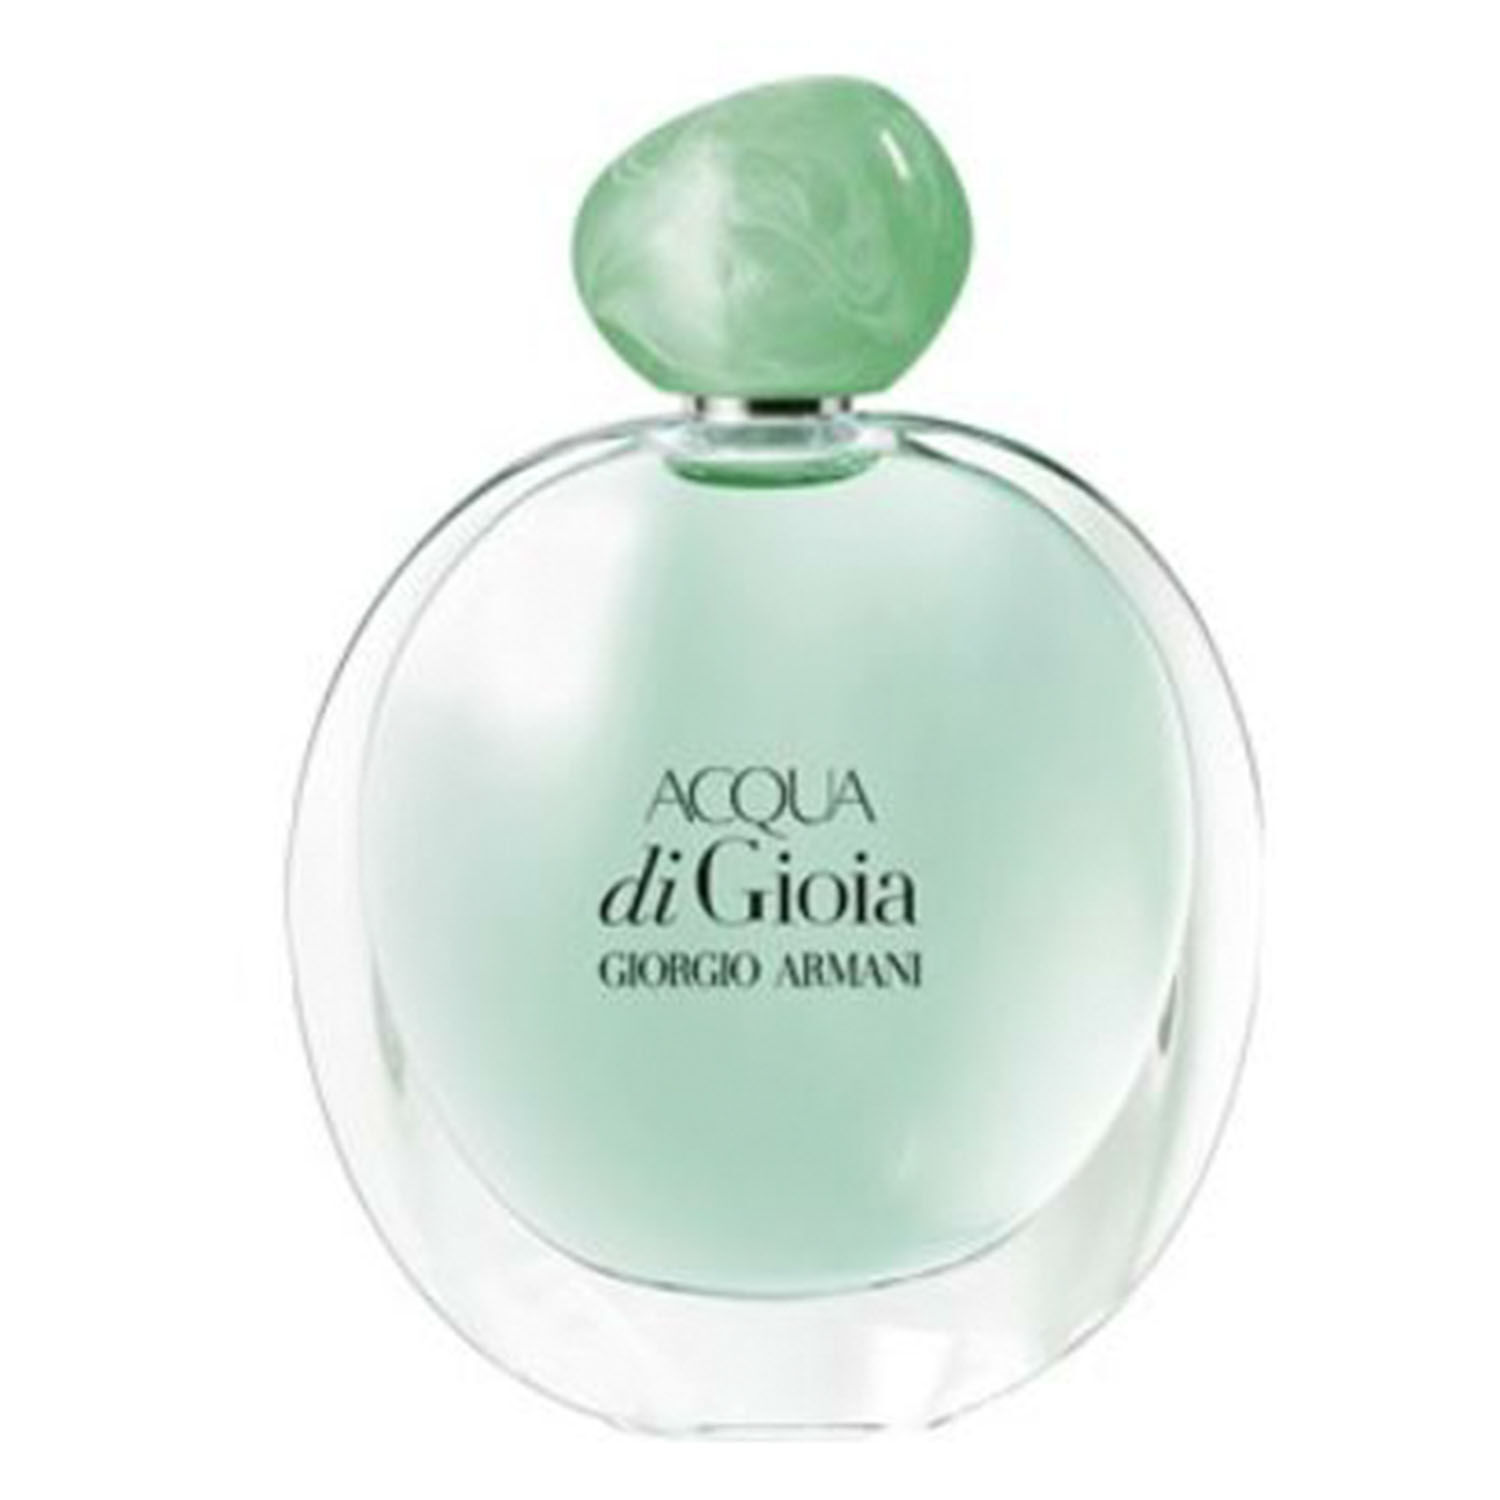 Buy Acqua Di Gioia Eau de Parfum 100ml 